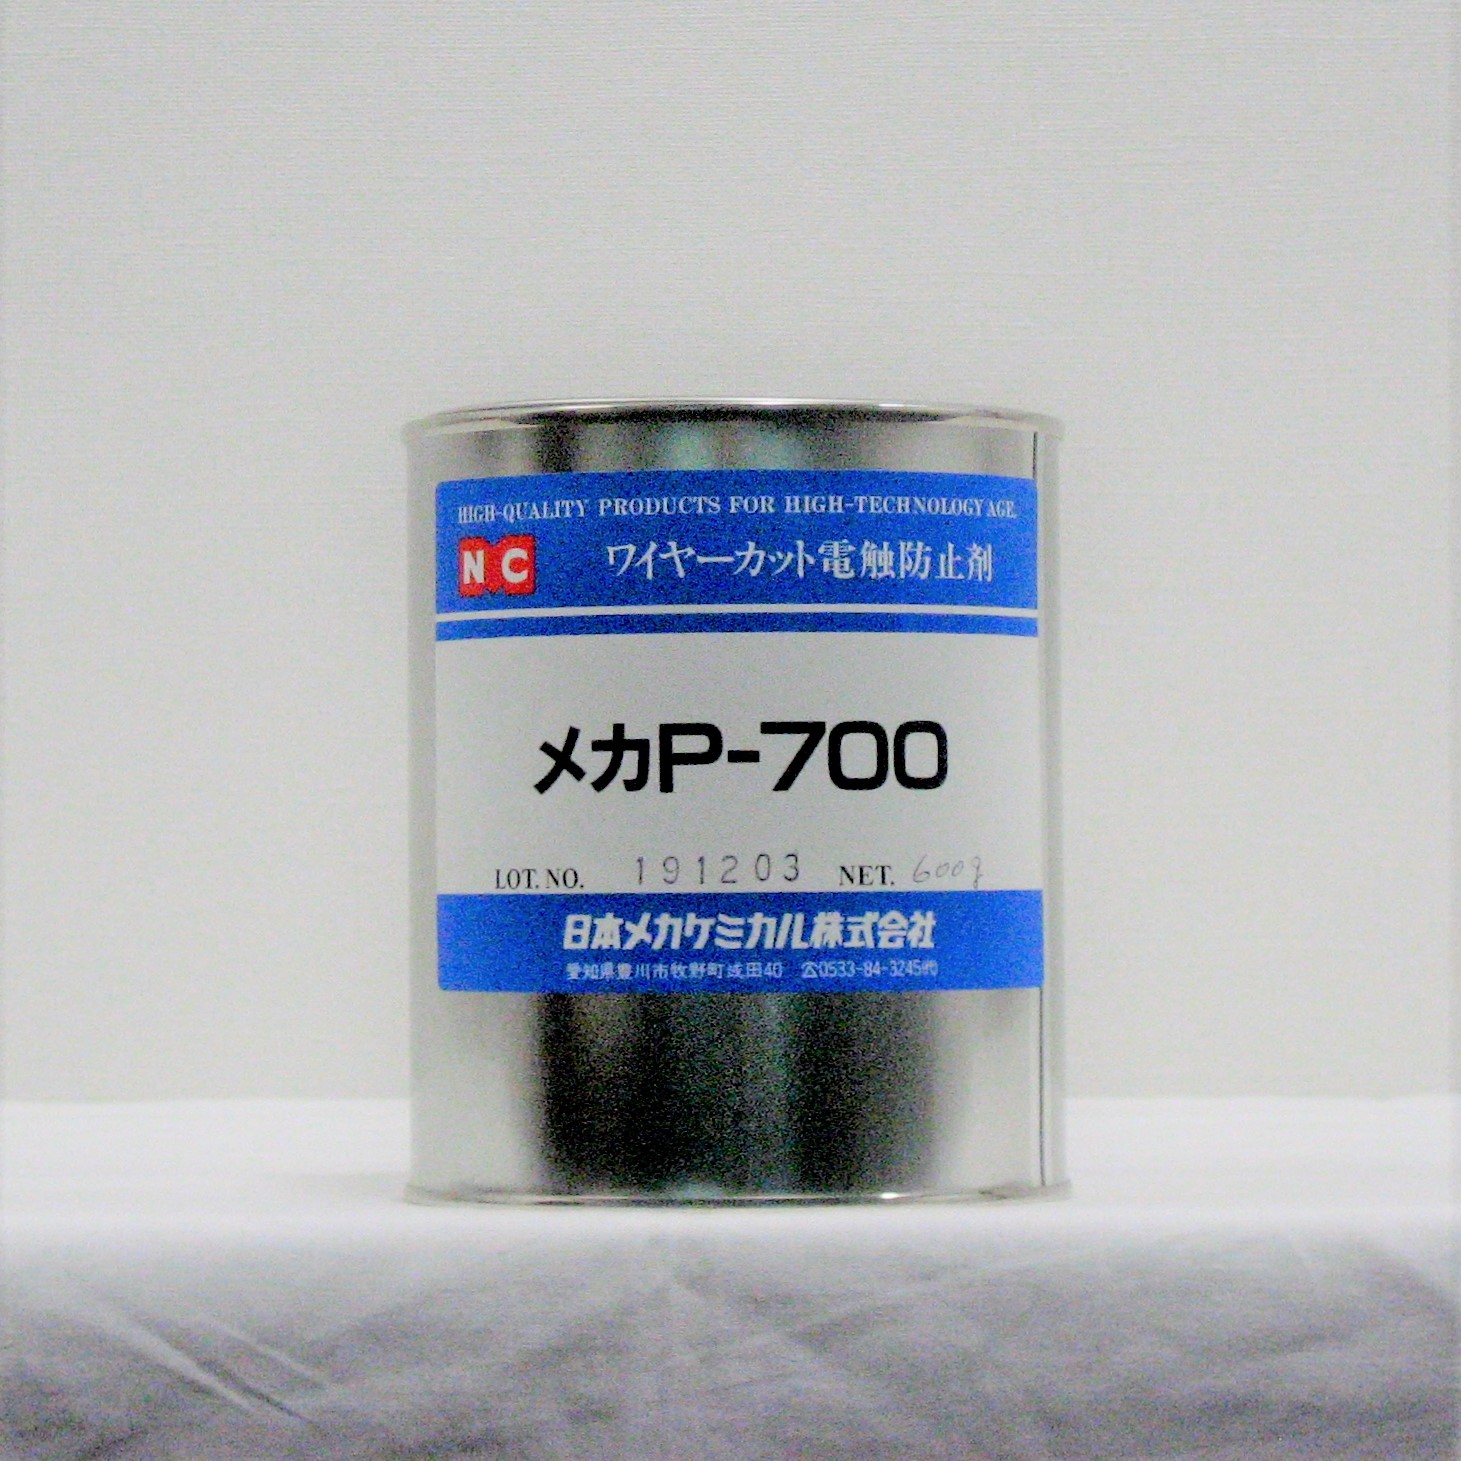 ﾜｯｸｽ型防錆剤 ﾒｶP-700 (600g缶) ペースト状防錆剤